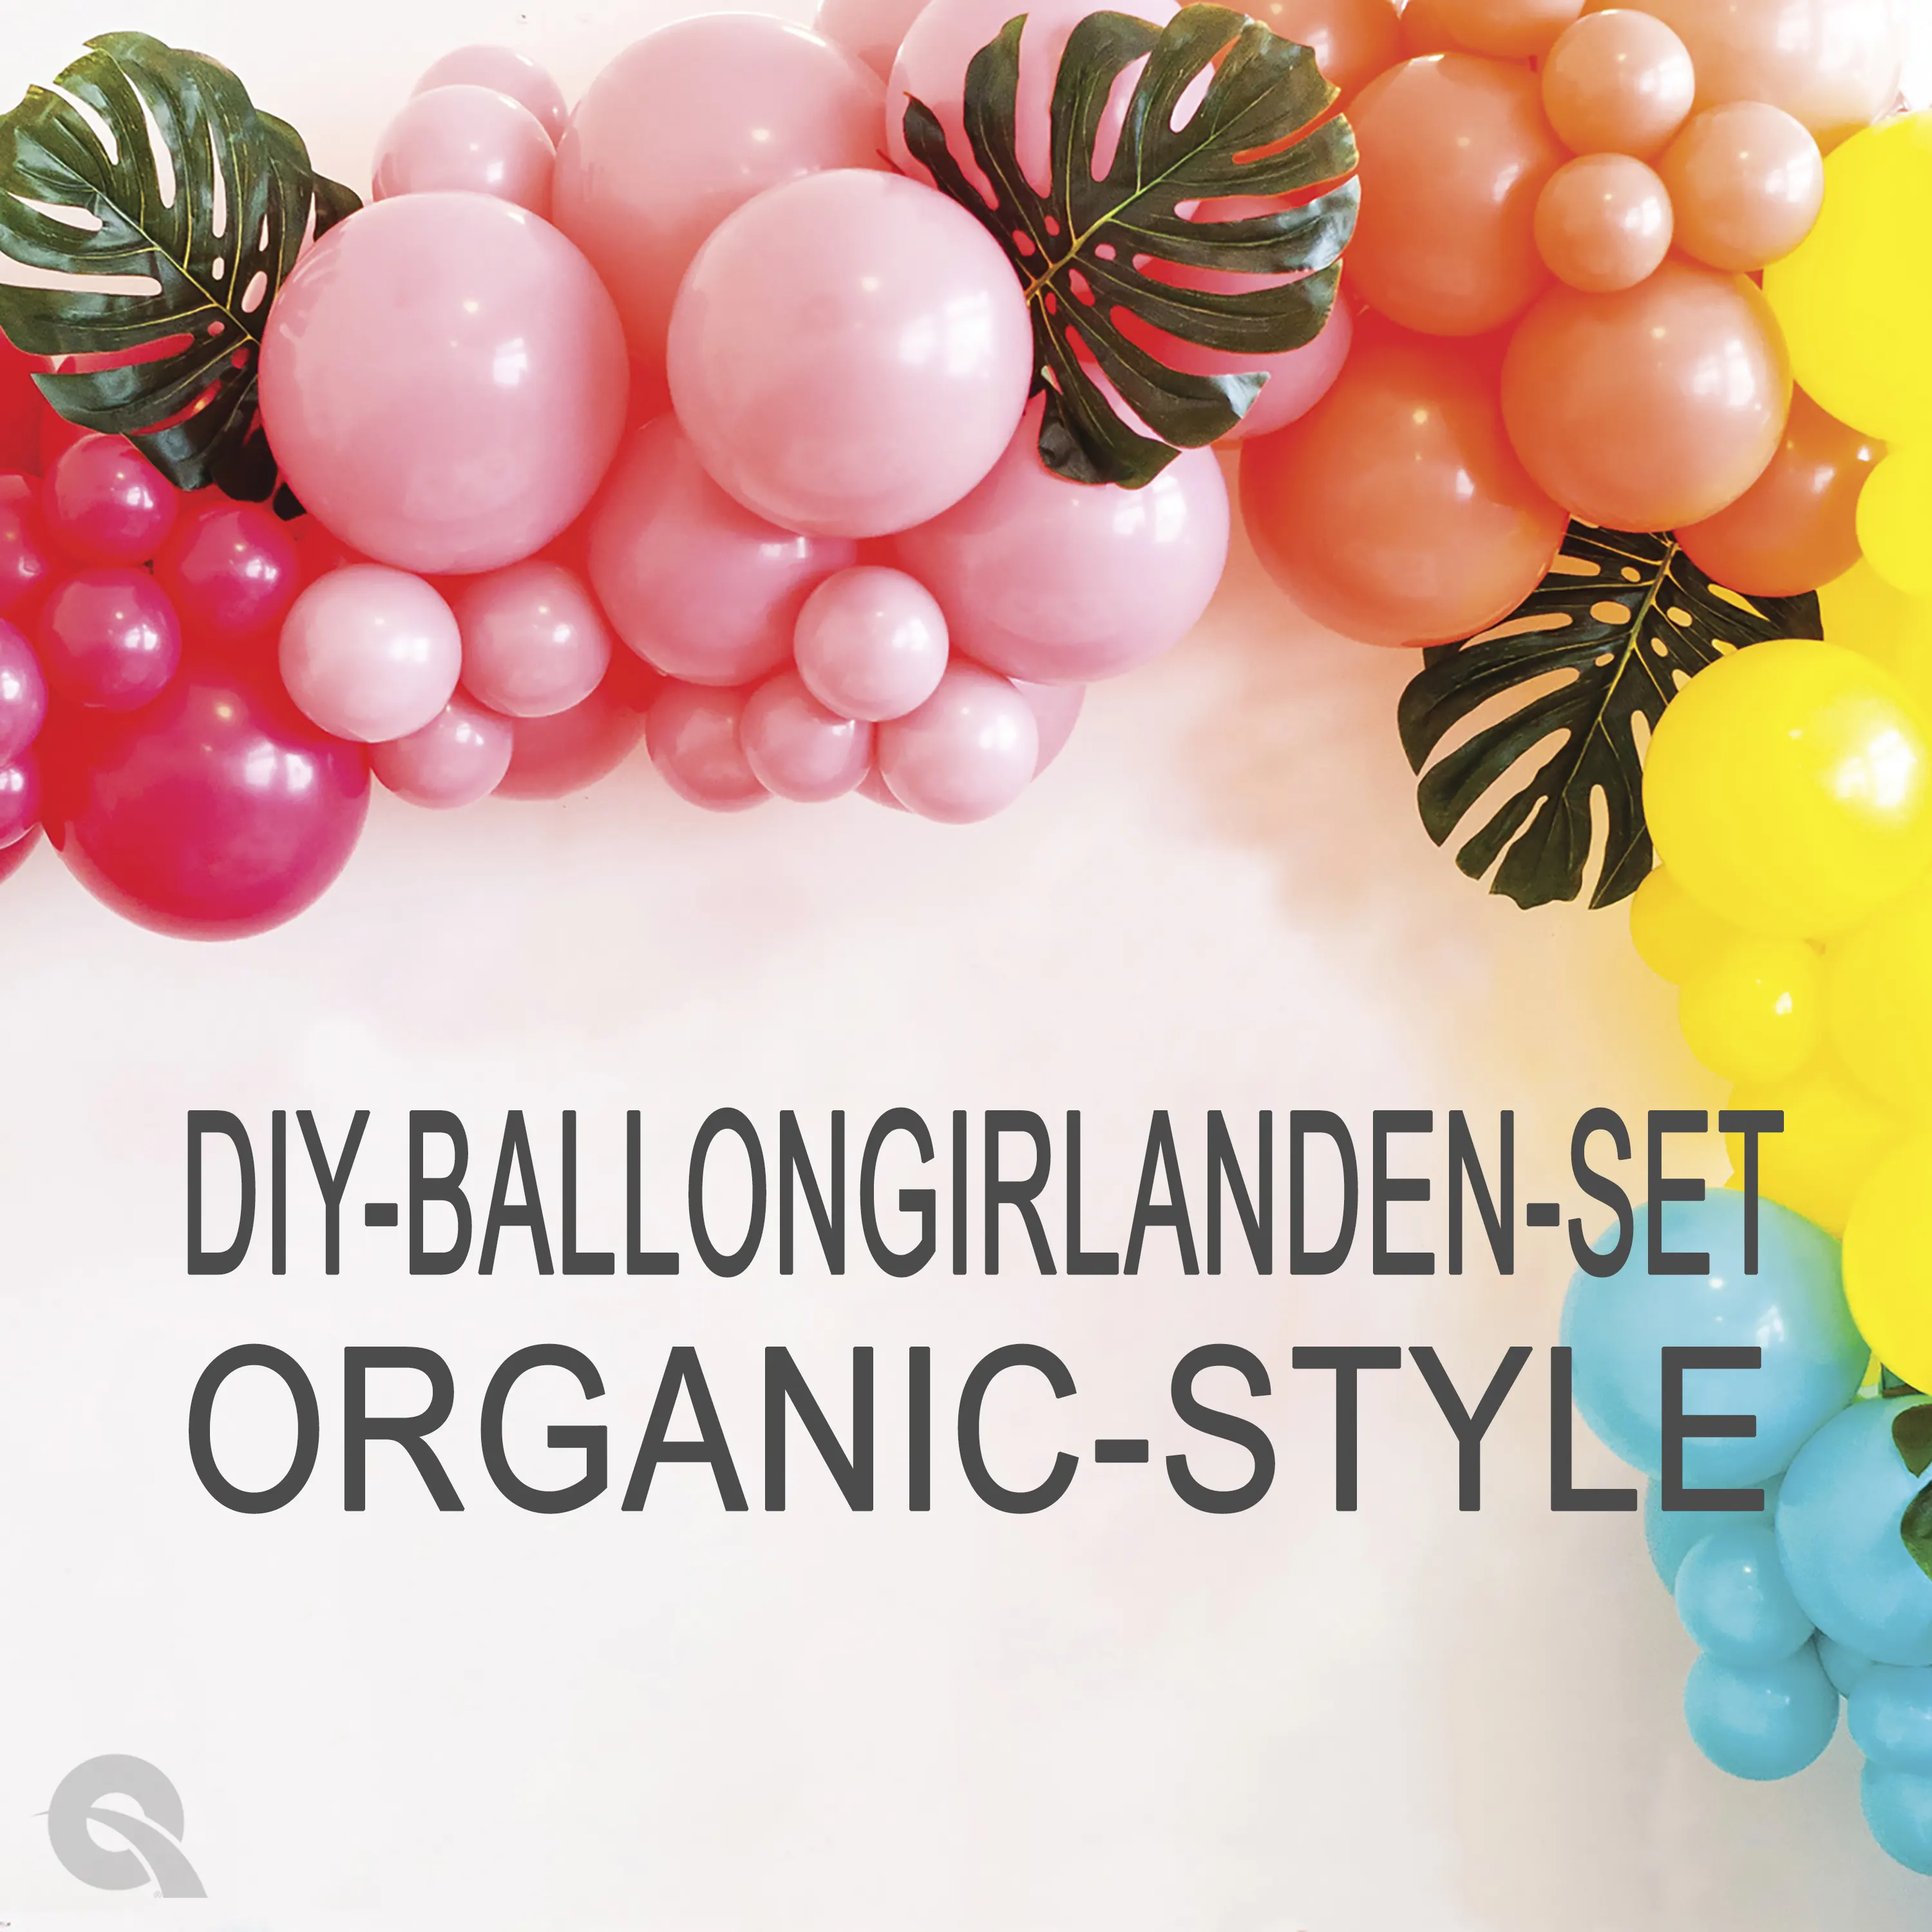 DIY - Ballongirlanden - Set: Organic-Style